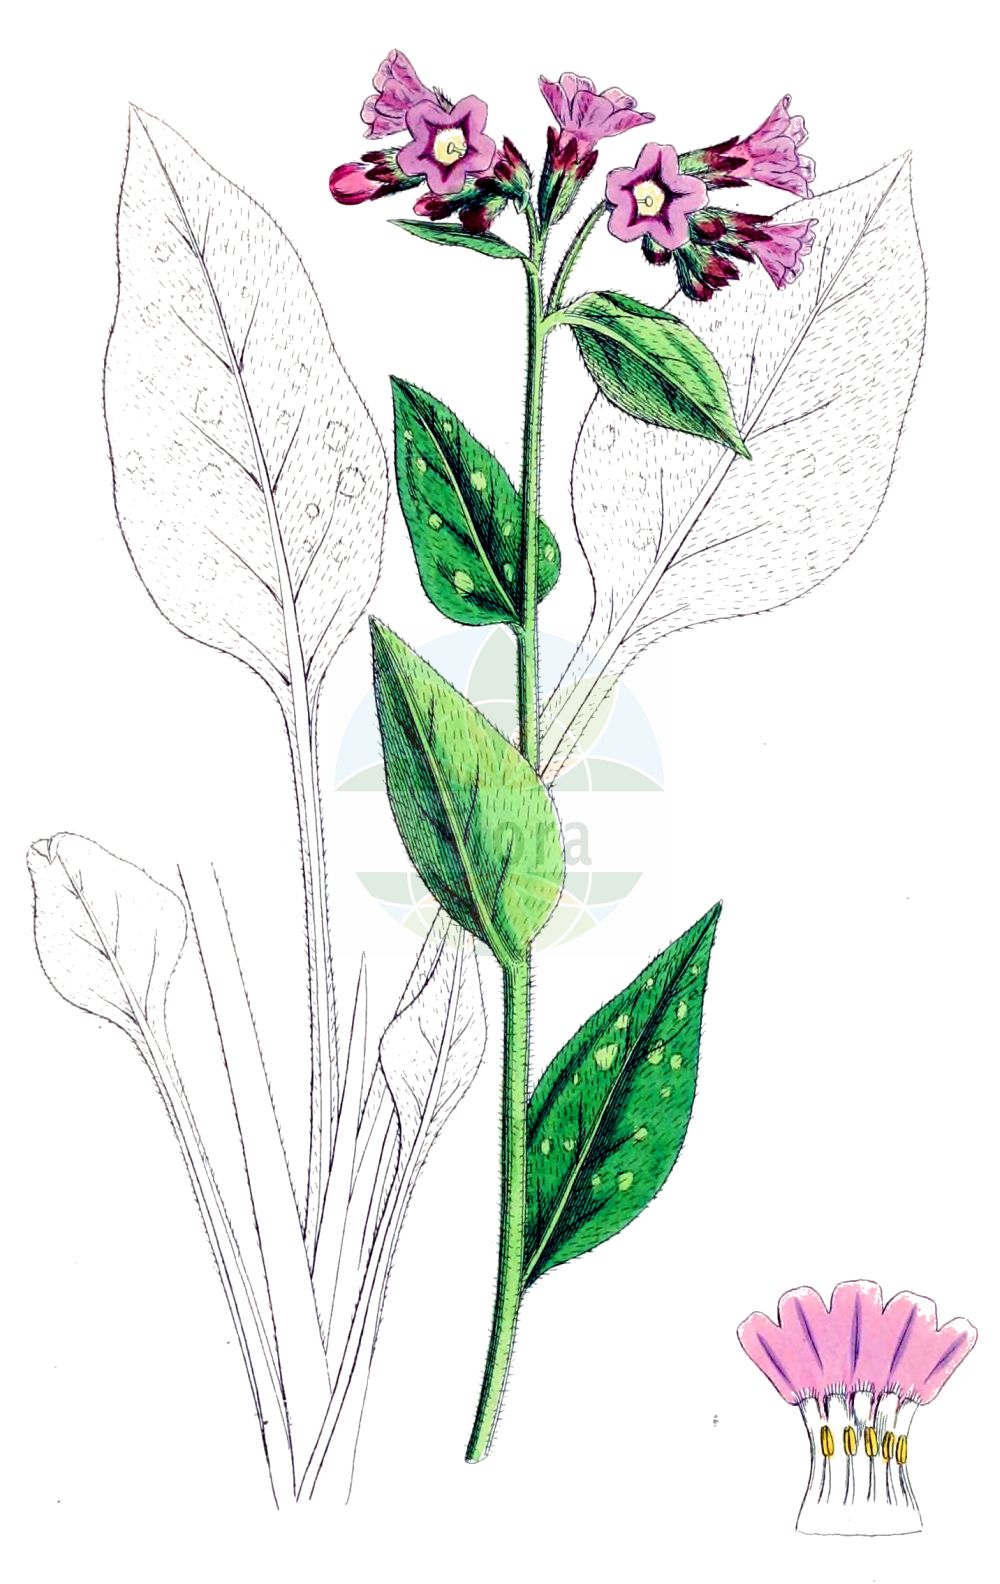 Historische Abbildung von Pulmonaria officinalis (Geflecktes Lungenkraut - Lungwort). Das Bild zeigt Blatt, Bluete, Frucht und Same. ---- Historical Drawing of Pulmonaria officinalis (Geflecktes Lungenkraut - Lungwort). The image is showing leaf, flower, fruit and seed.(Pulmonaria officinalis,Geflecktes Lungenkraut,Lungwort,Pulmonaria konradii,Pulmonaria maculosa,Pulmonaria officinalis,Pulmonaria tridentina,Geflecktes Lungenkraut,Lungwort,Common Lungwort,Jerusalem Sage,Pulmonaria,Lungenkraut,Lungwort,Boraginaceae,Raublattgewächse,Forget-me-Not family,Blatt,Bluete,Frucht,Same,leaf,flower,fruit,seed,Sowerby (1790-1813))